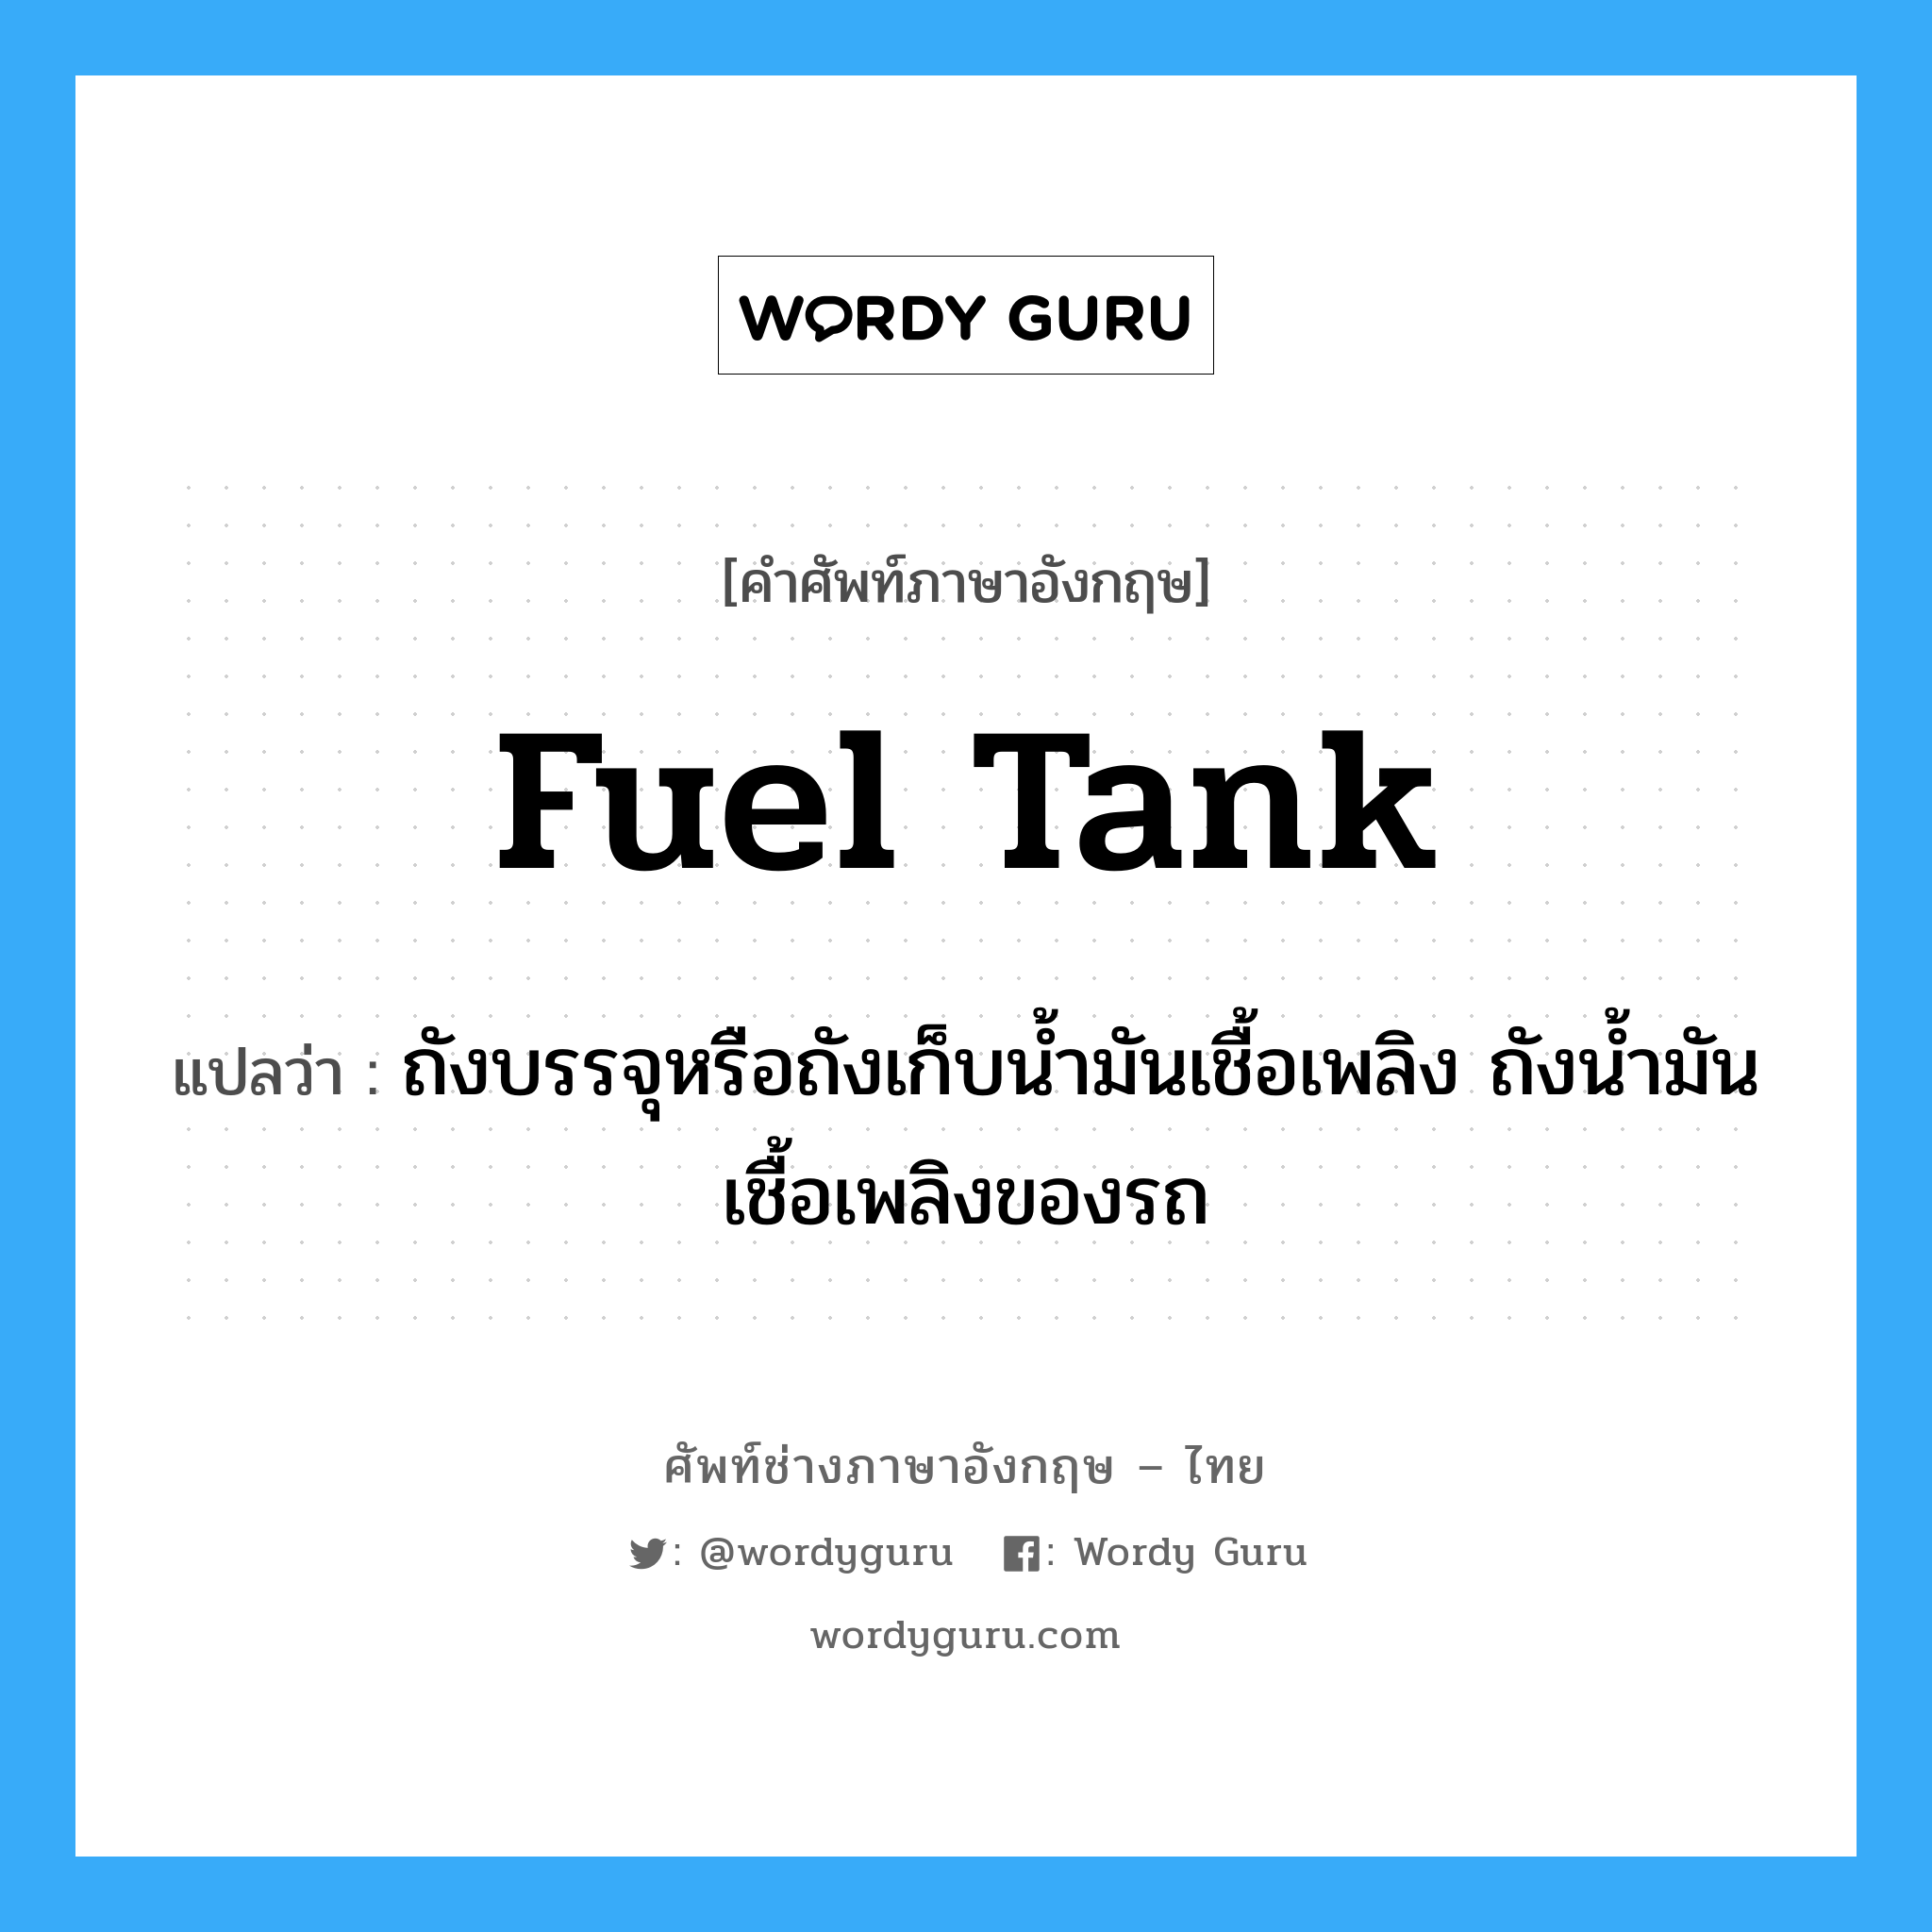 fuel tank แปลว่า?, คำศัพท์ช่างภาษาอังกฤษ - ไทย fuel tank คำศัพท์ภาษาอังกฤษ fuel tank แปลว่า ถังบรรจุหรือถังเก็บน้ำมันเชื้อเพลิง ถังน้ำมันเชื้อเพลิงของรถ